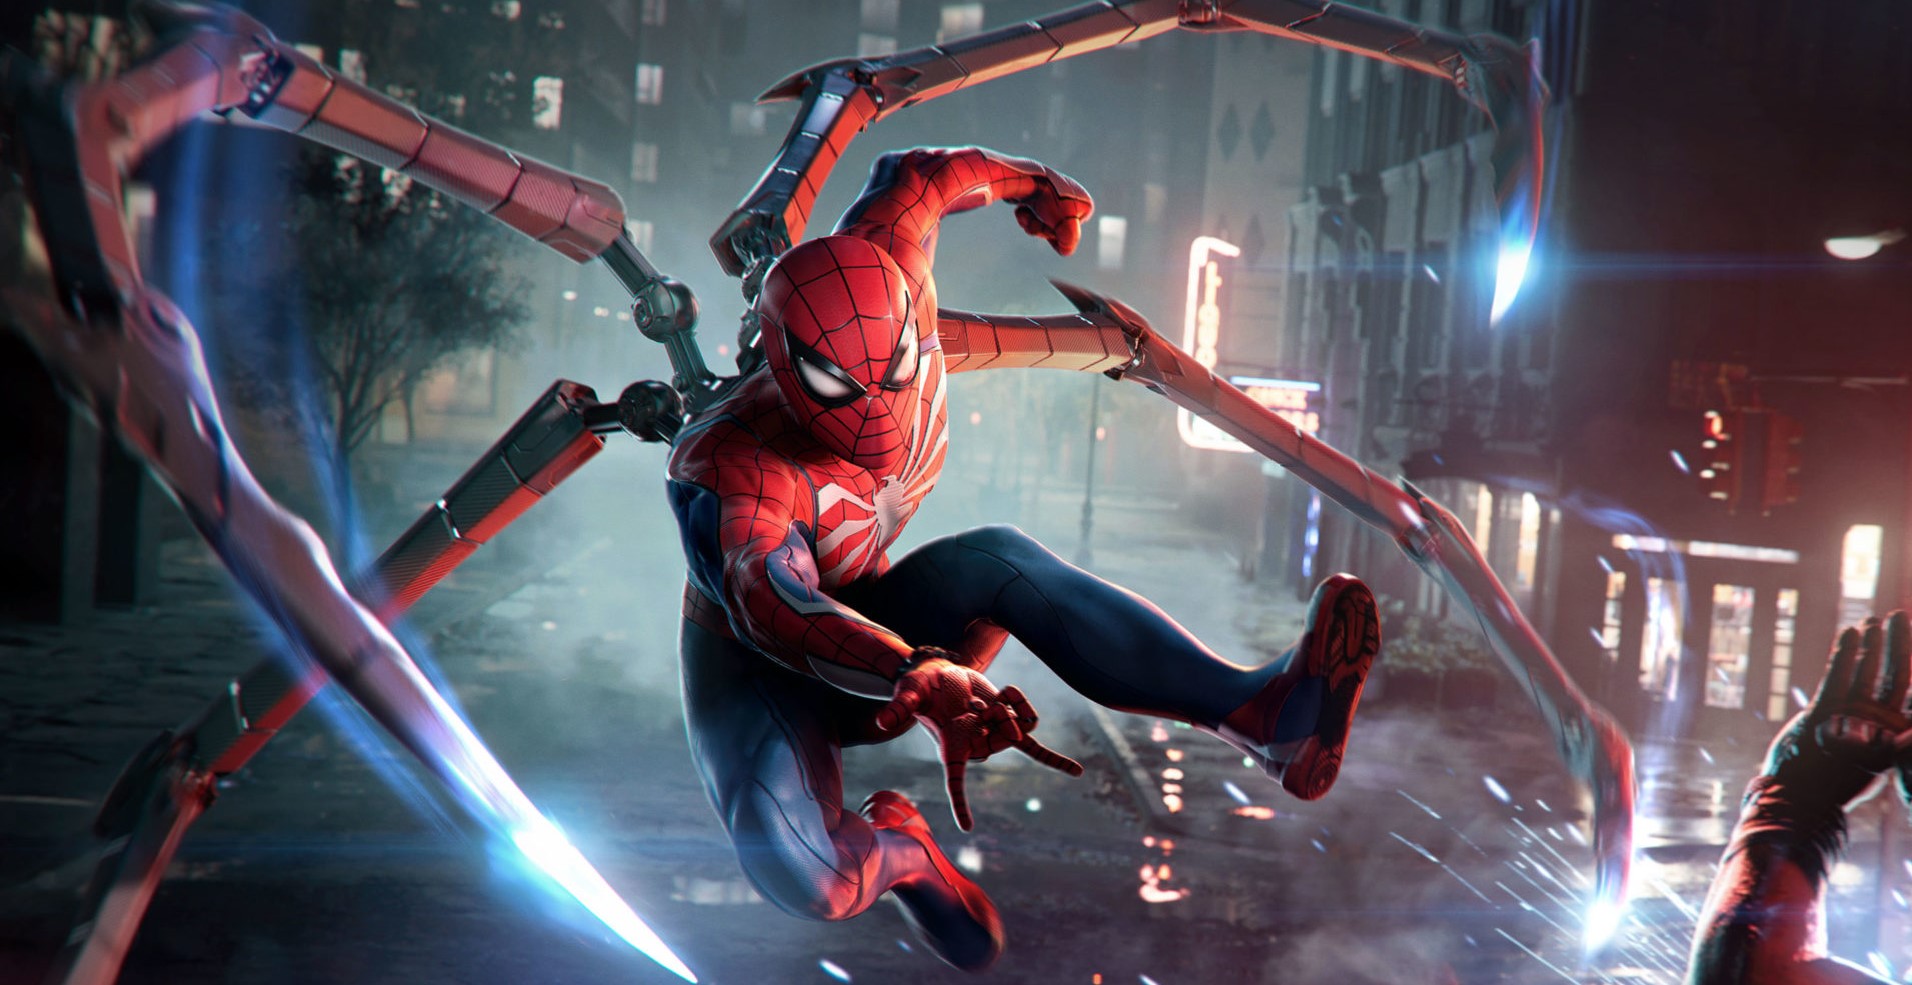 O Homem-Aranha ataca os inimigos em Marvel's Spider-Man 2.